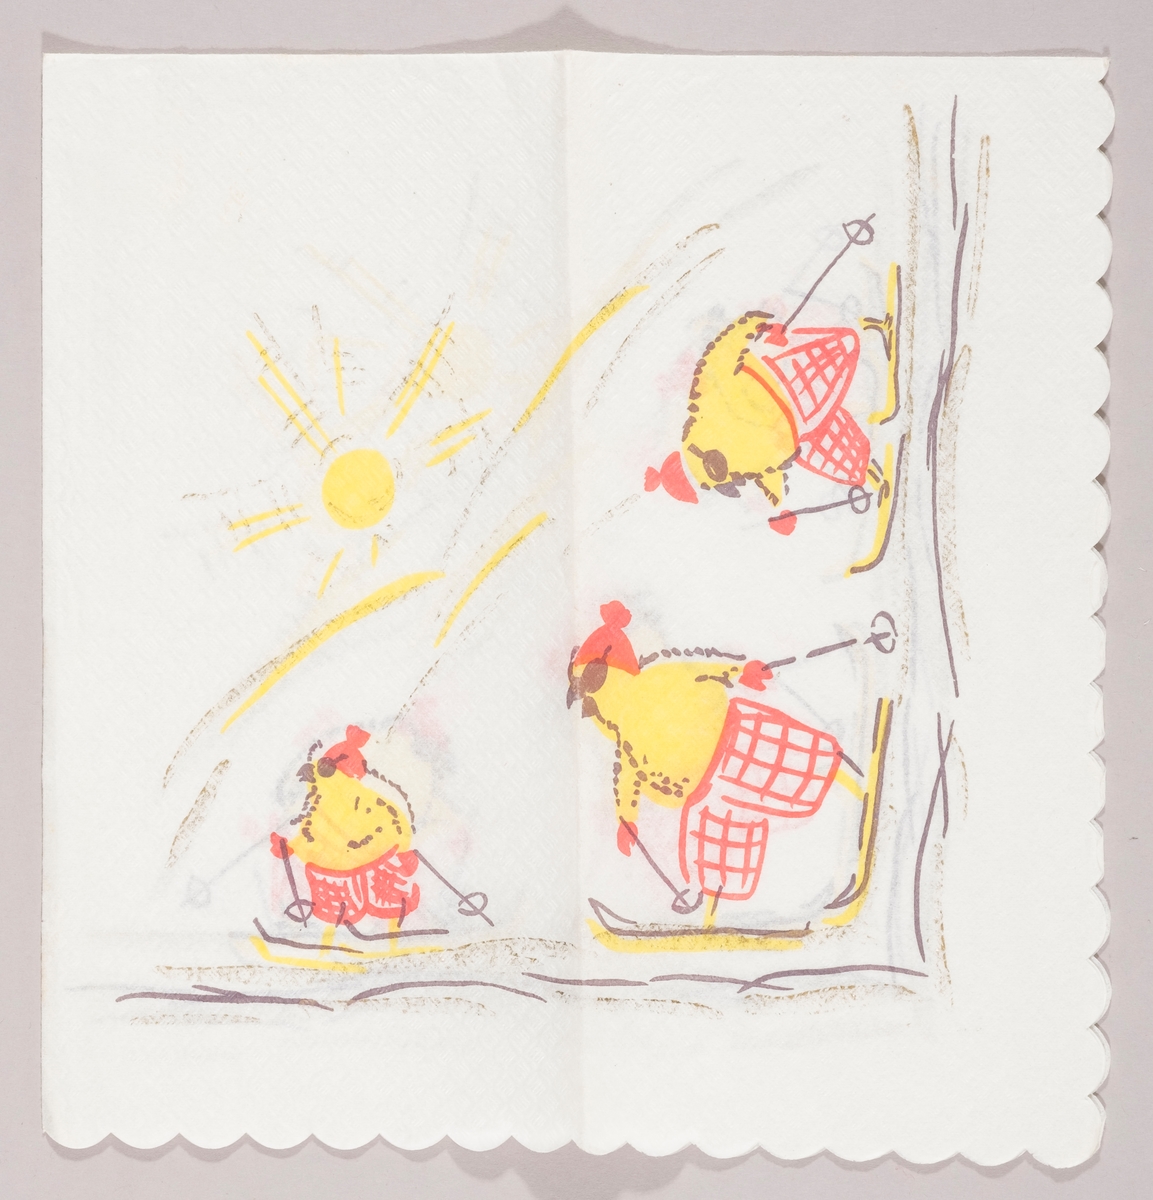 Tre kyllinger med rutete bukser, lue og solbriller går på ski. I bakgrunnen en strålende sol over et hvit fjellområde.